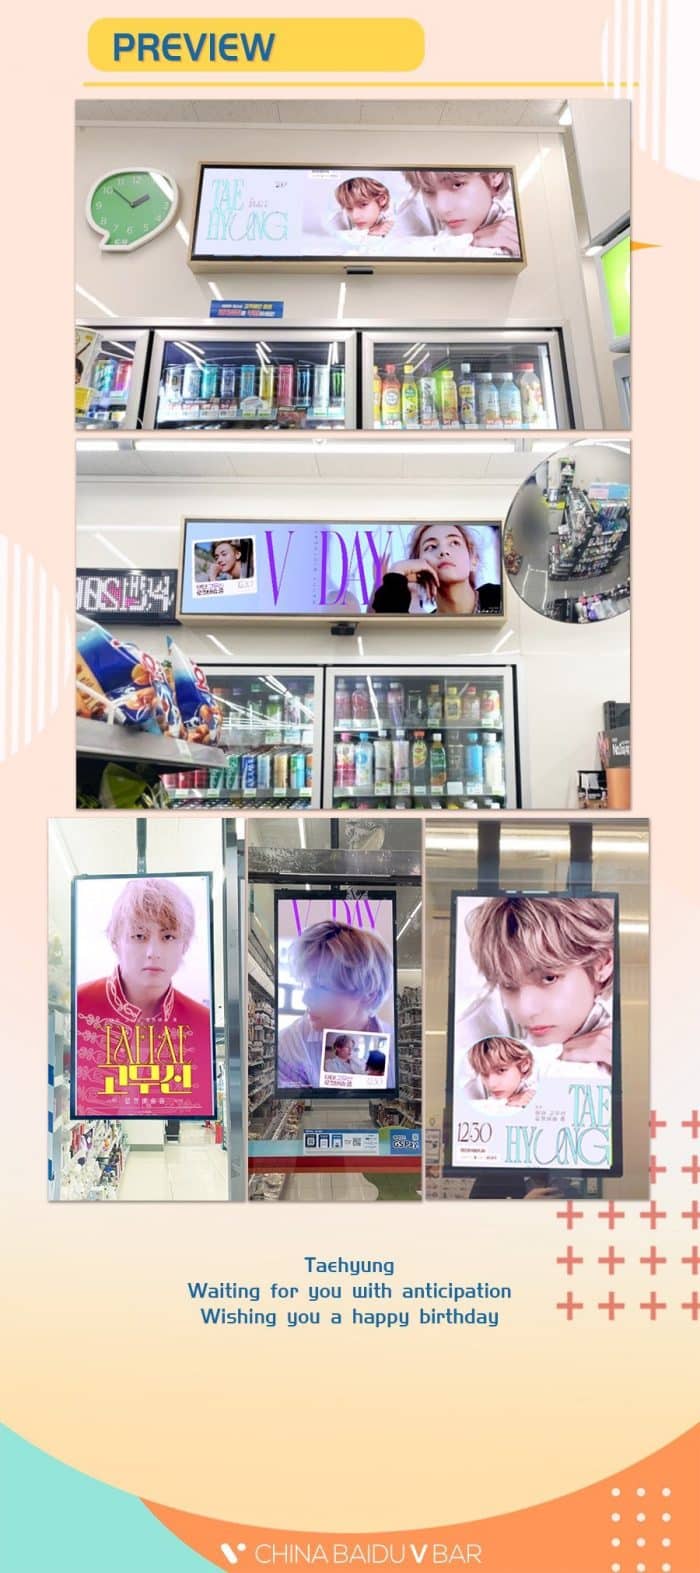 Рекламы с Ви из BTS, посвящённые празднованию его дня рождения, появились в 5300 магазинах Южной Кореи